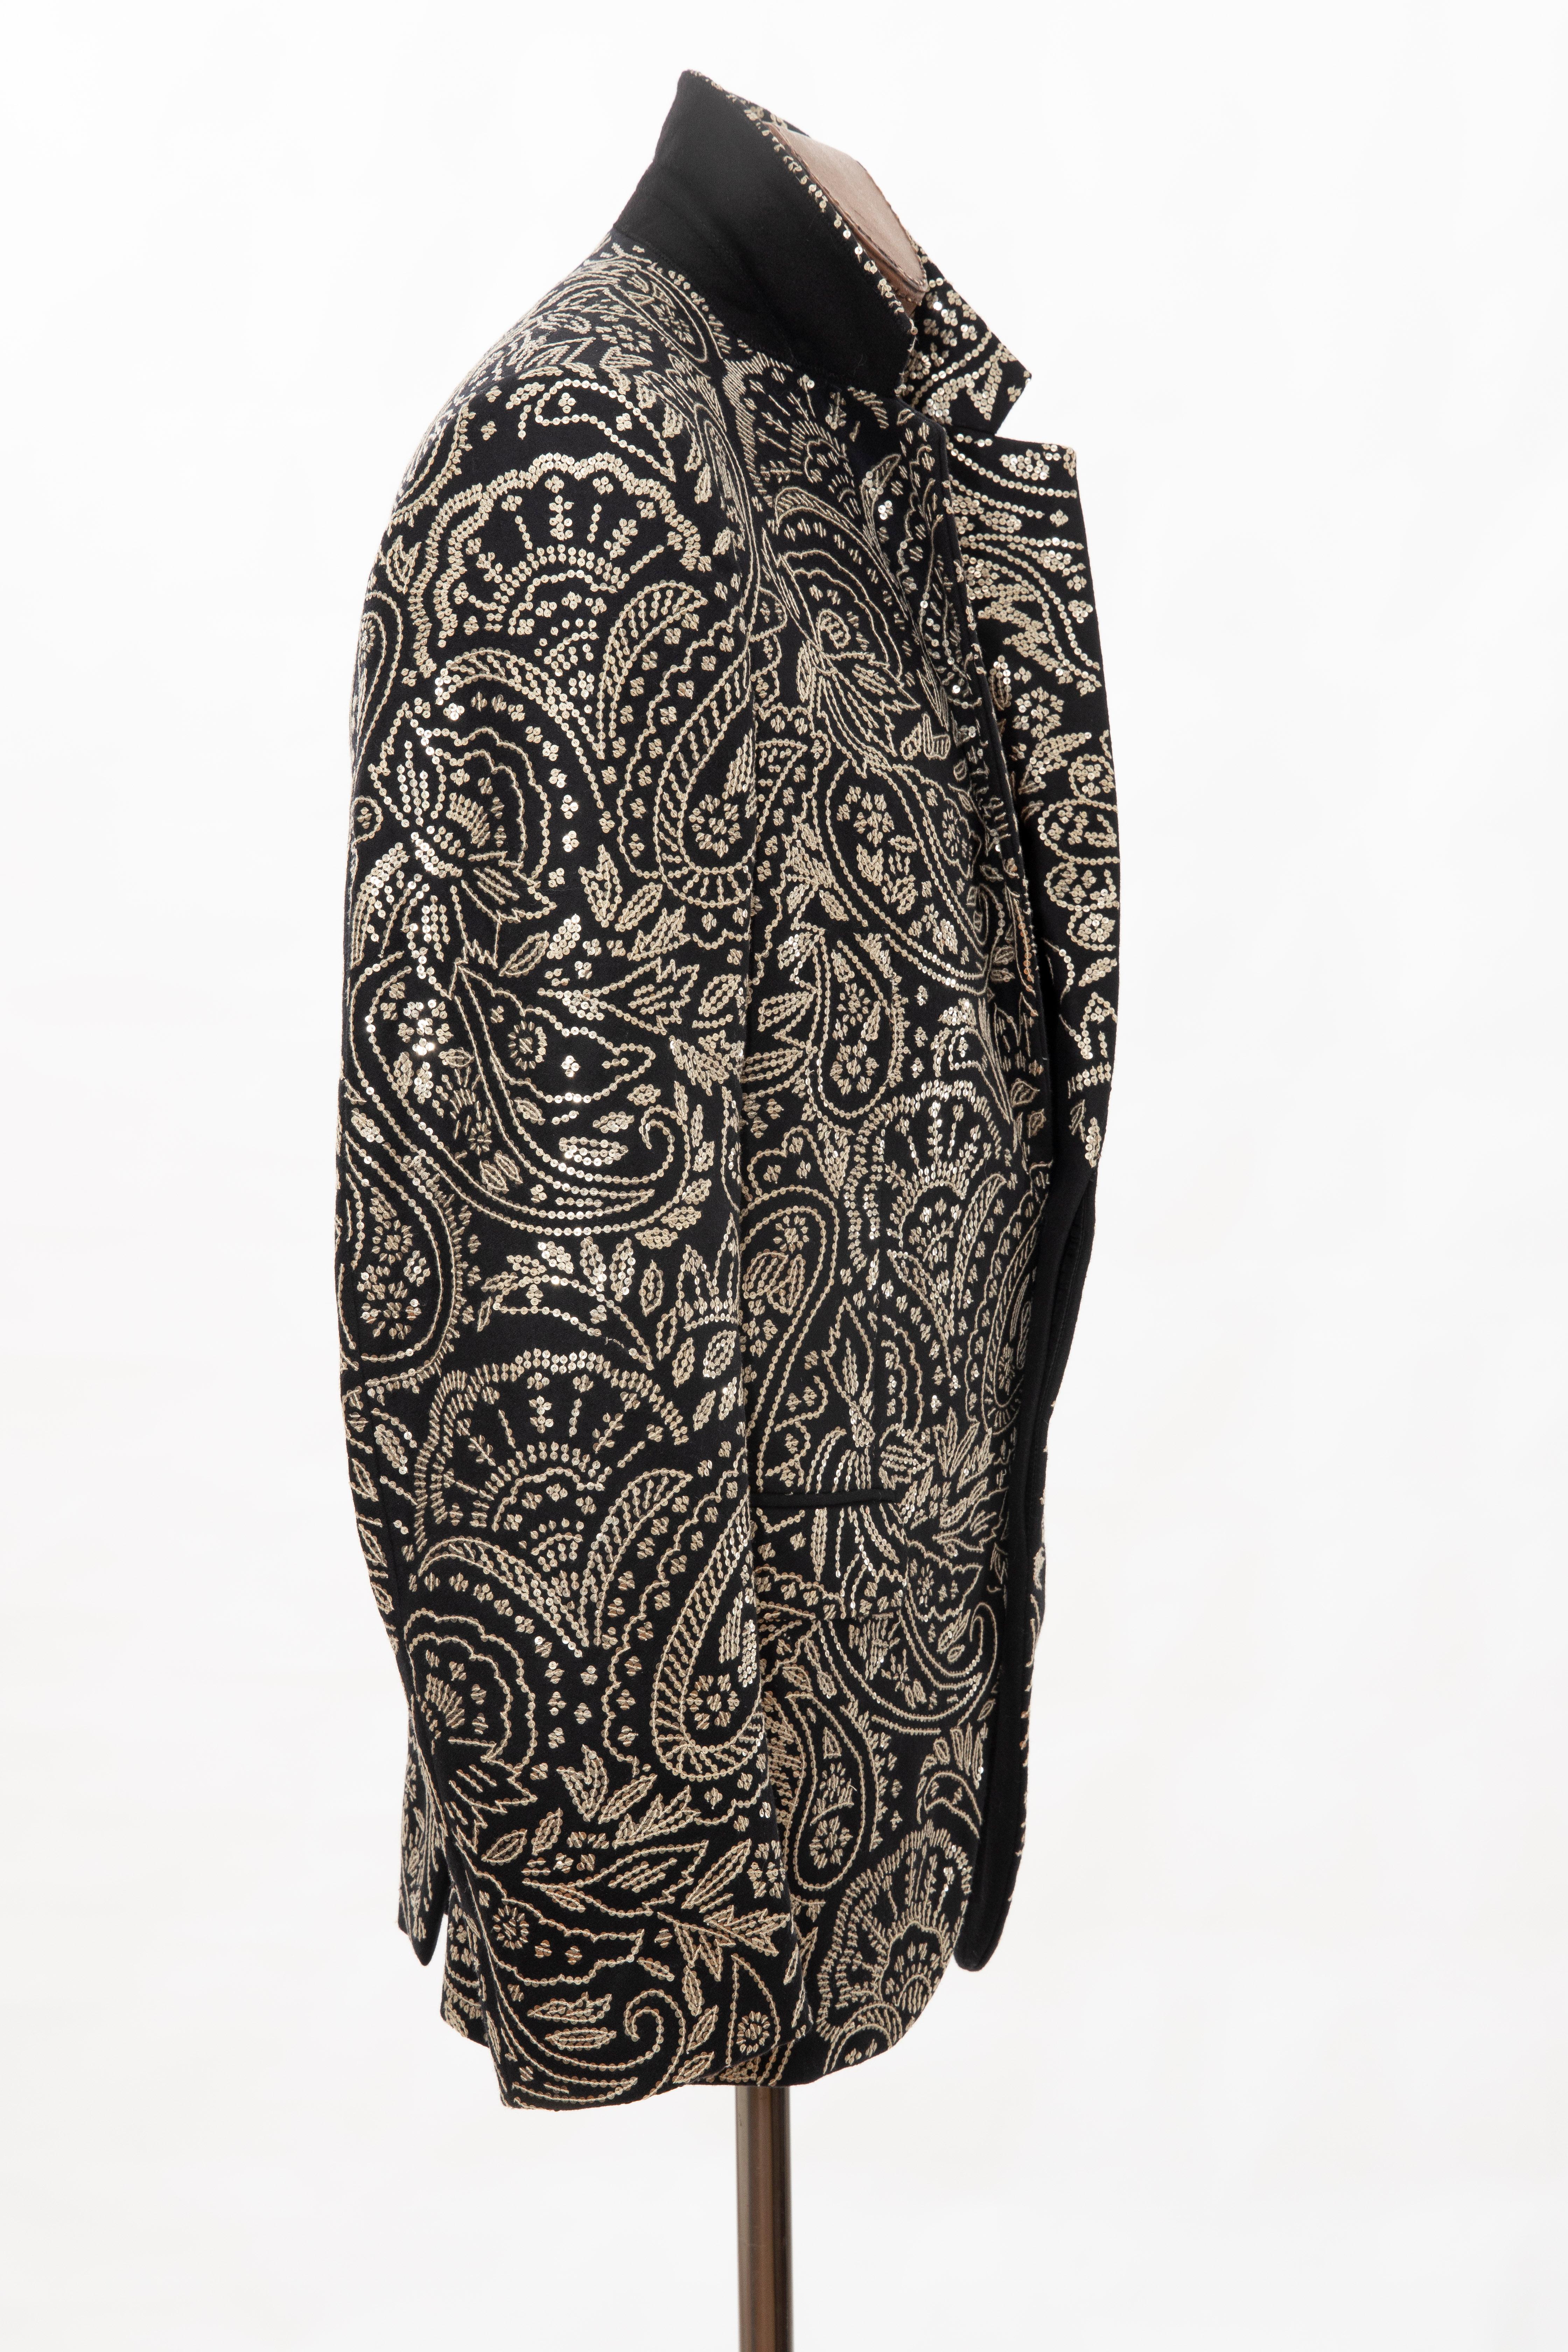 Alexander McQueen Men's Runway Black Wool Embroidered Sequin Blazer, Fall 2016 7